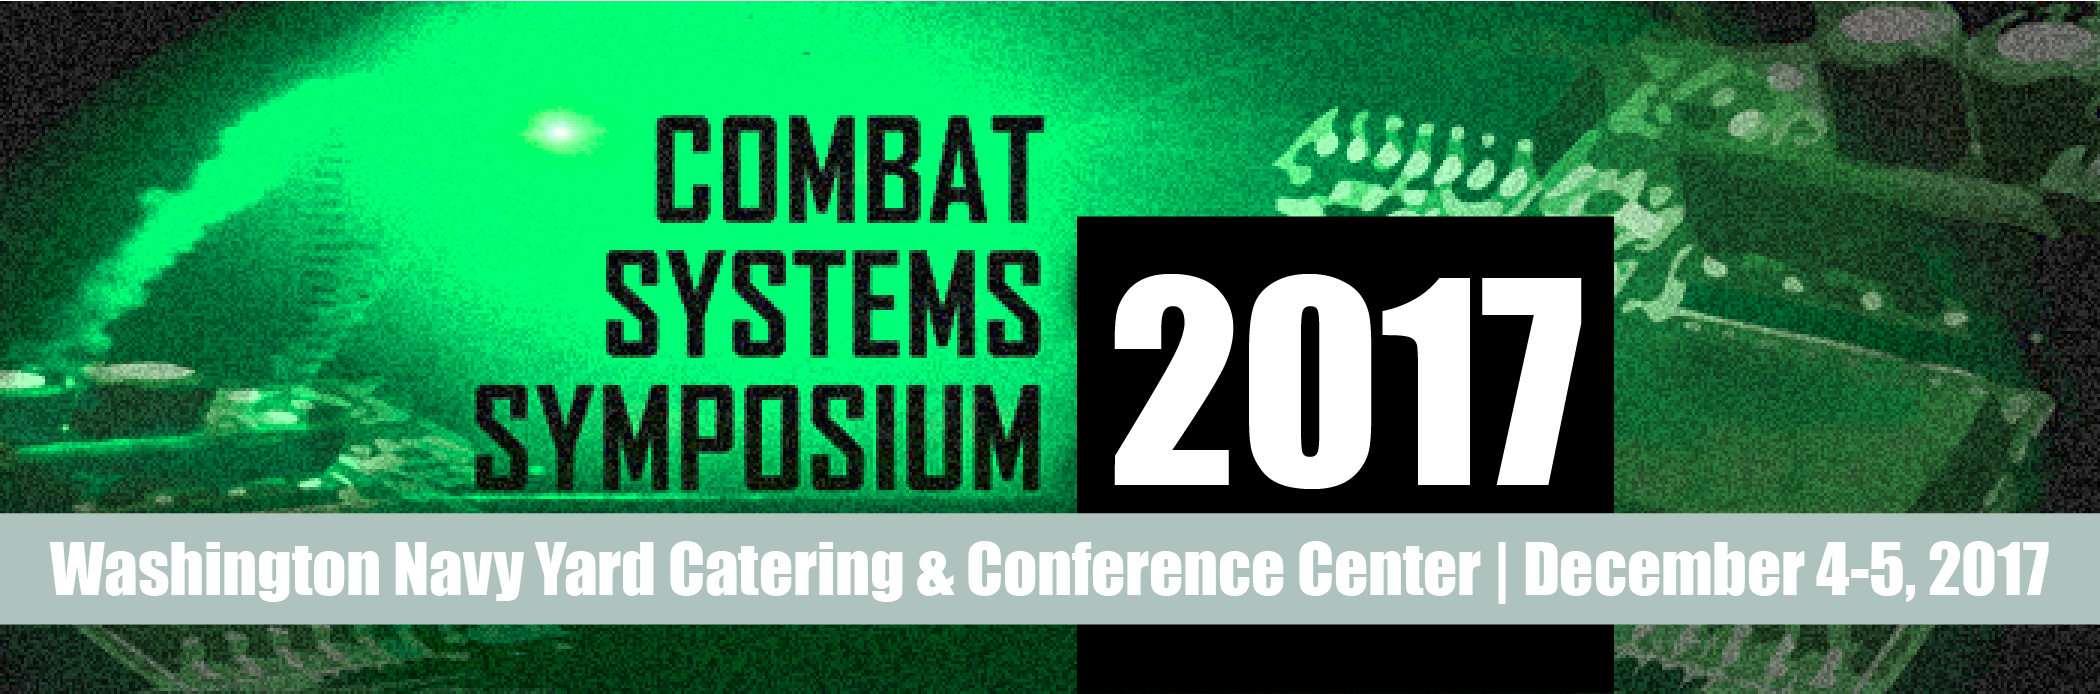 Combat Systems Symposium